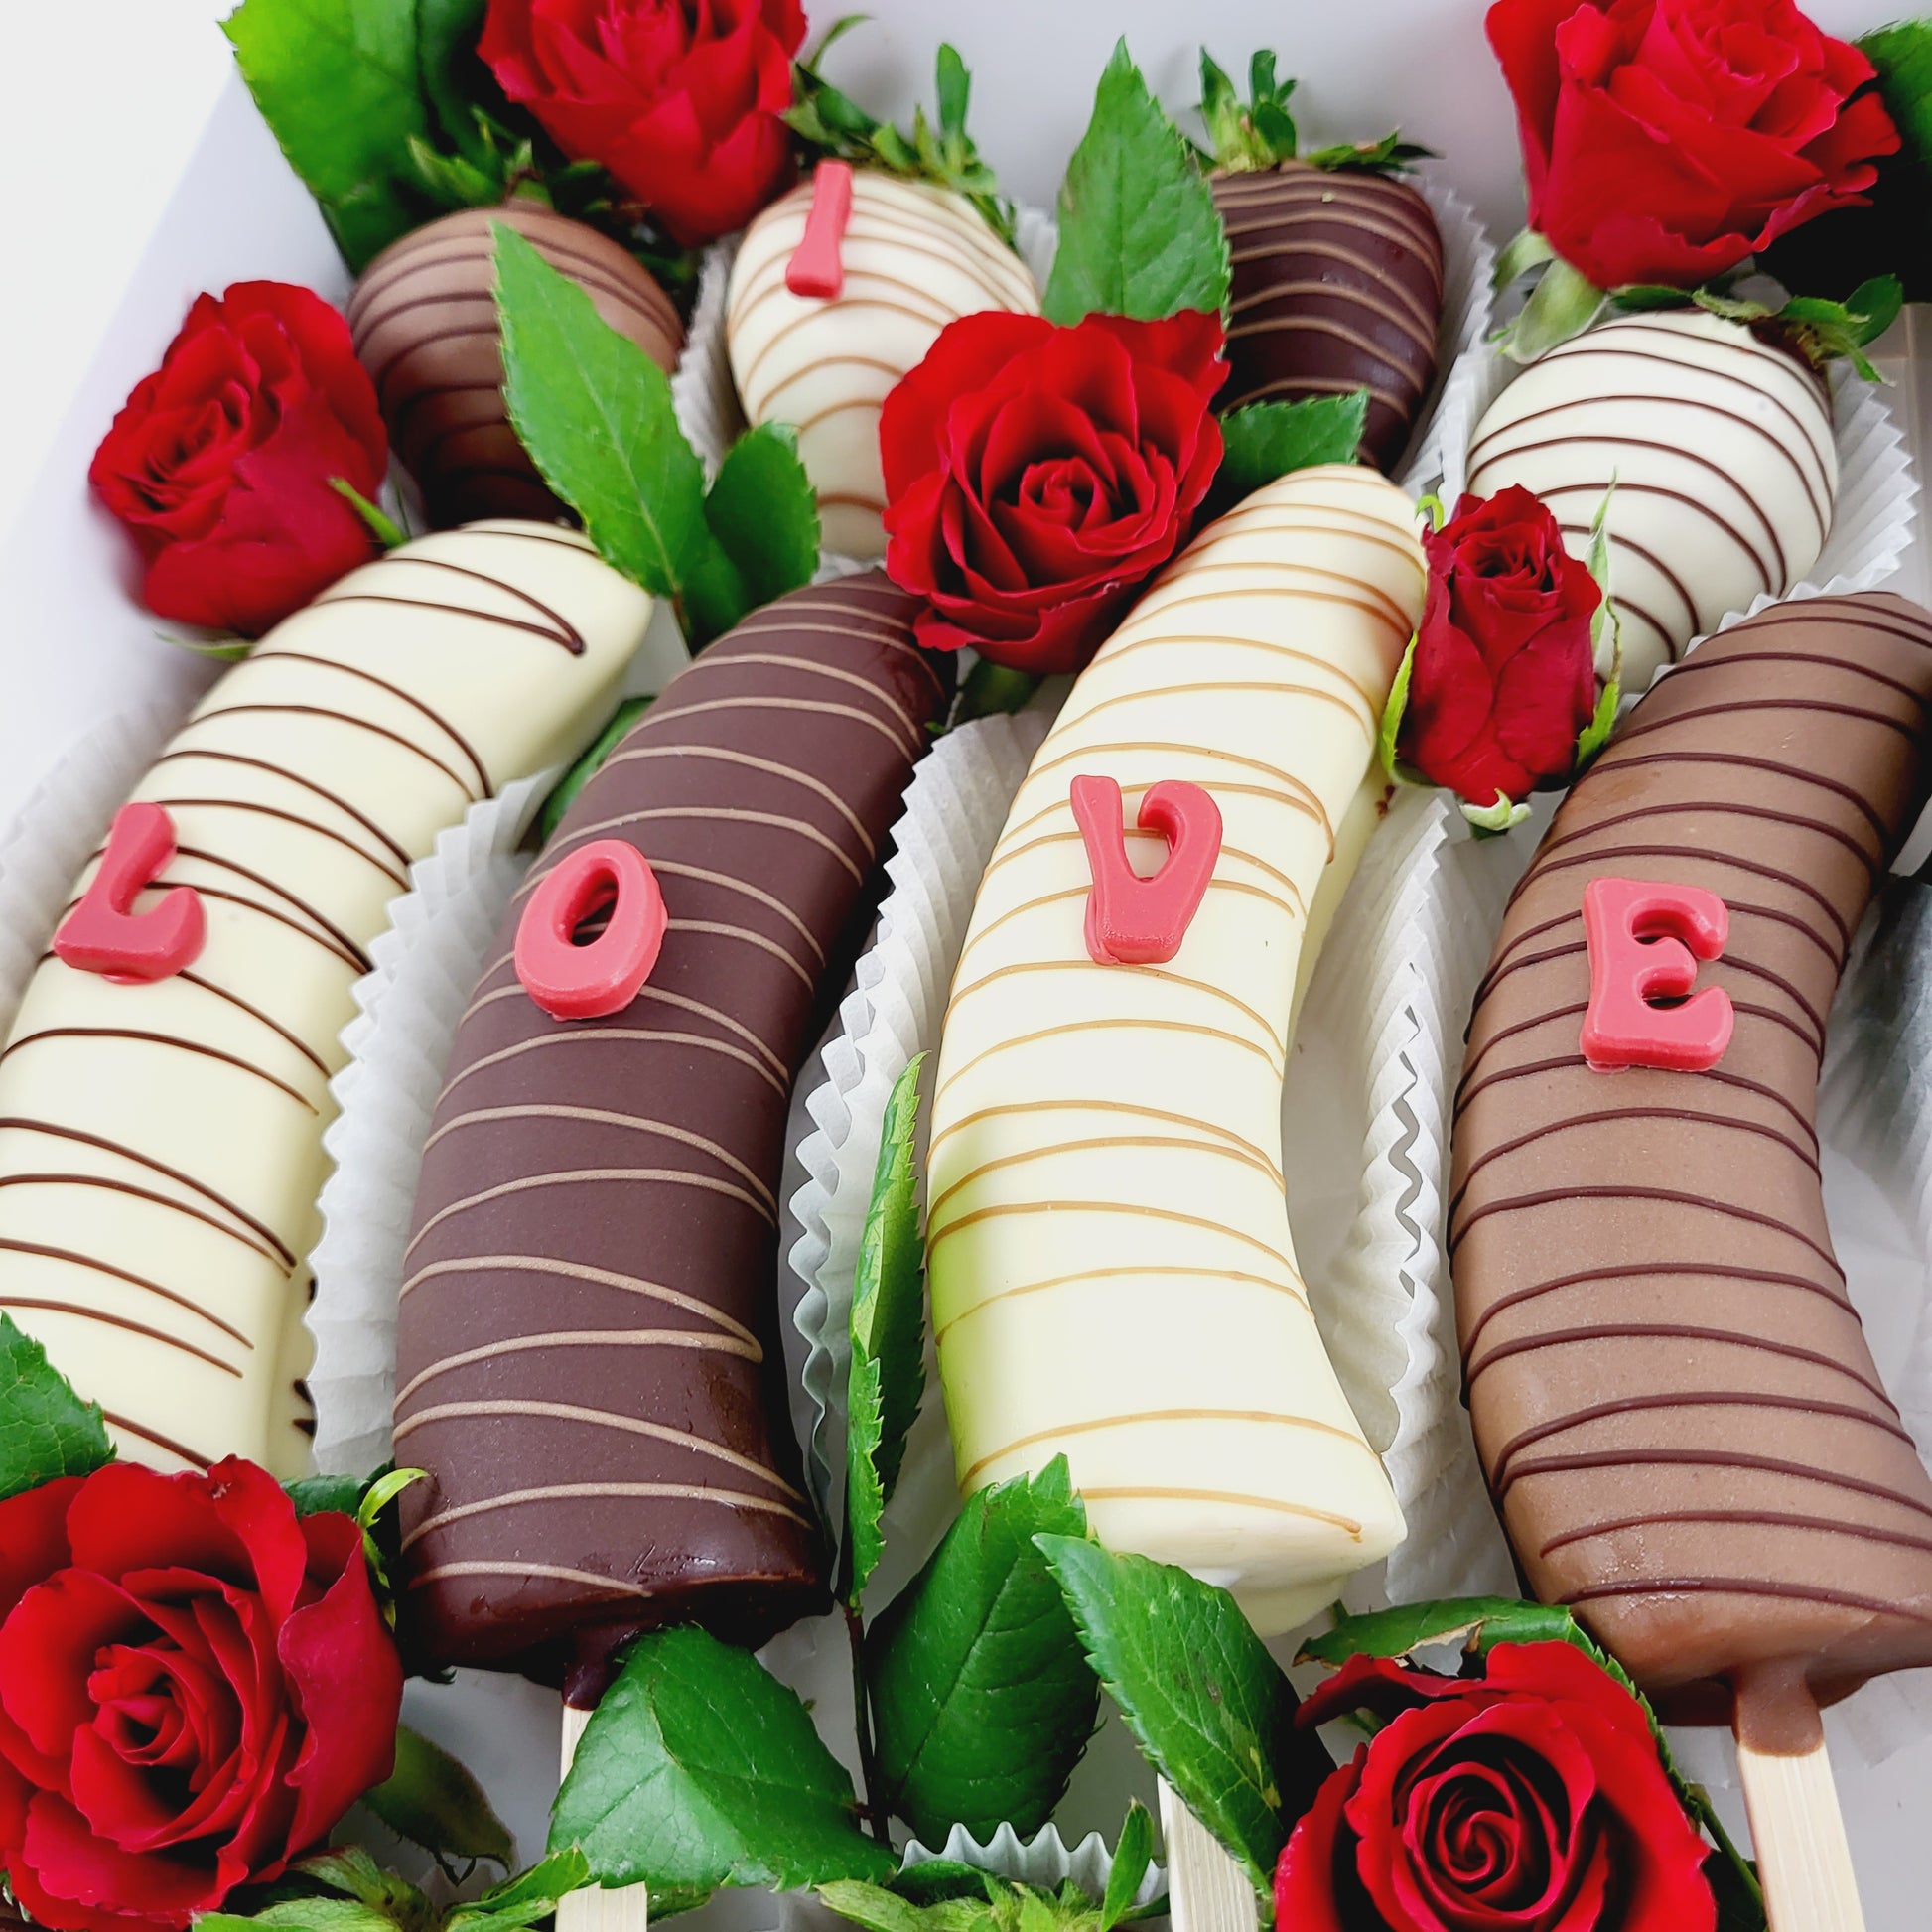 Choco Fruits Schokoerdbeeren und Schokobananen mit I Love You Buchstaben verziert und mit roten Rosen dekoriert